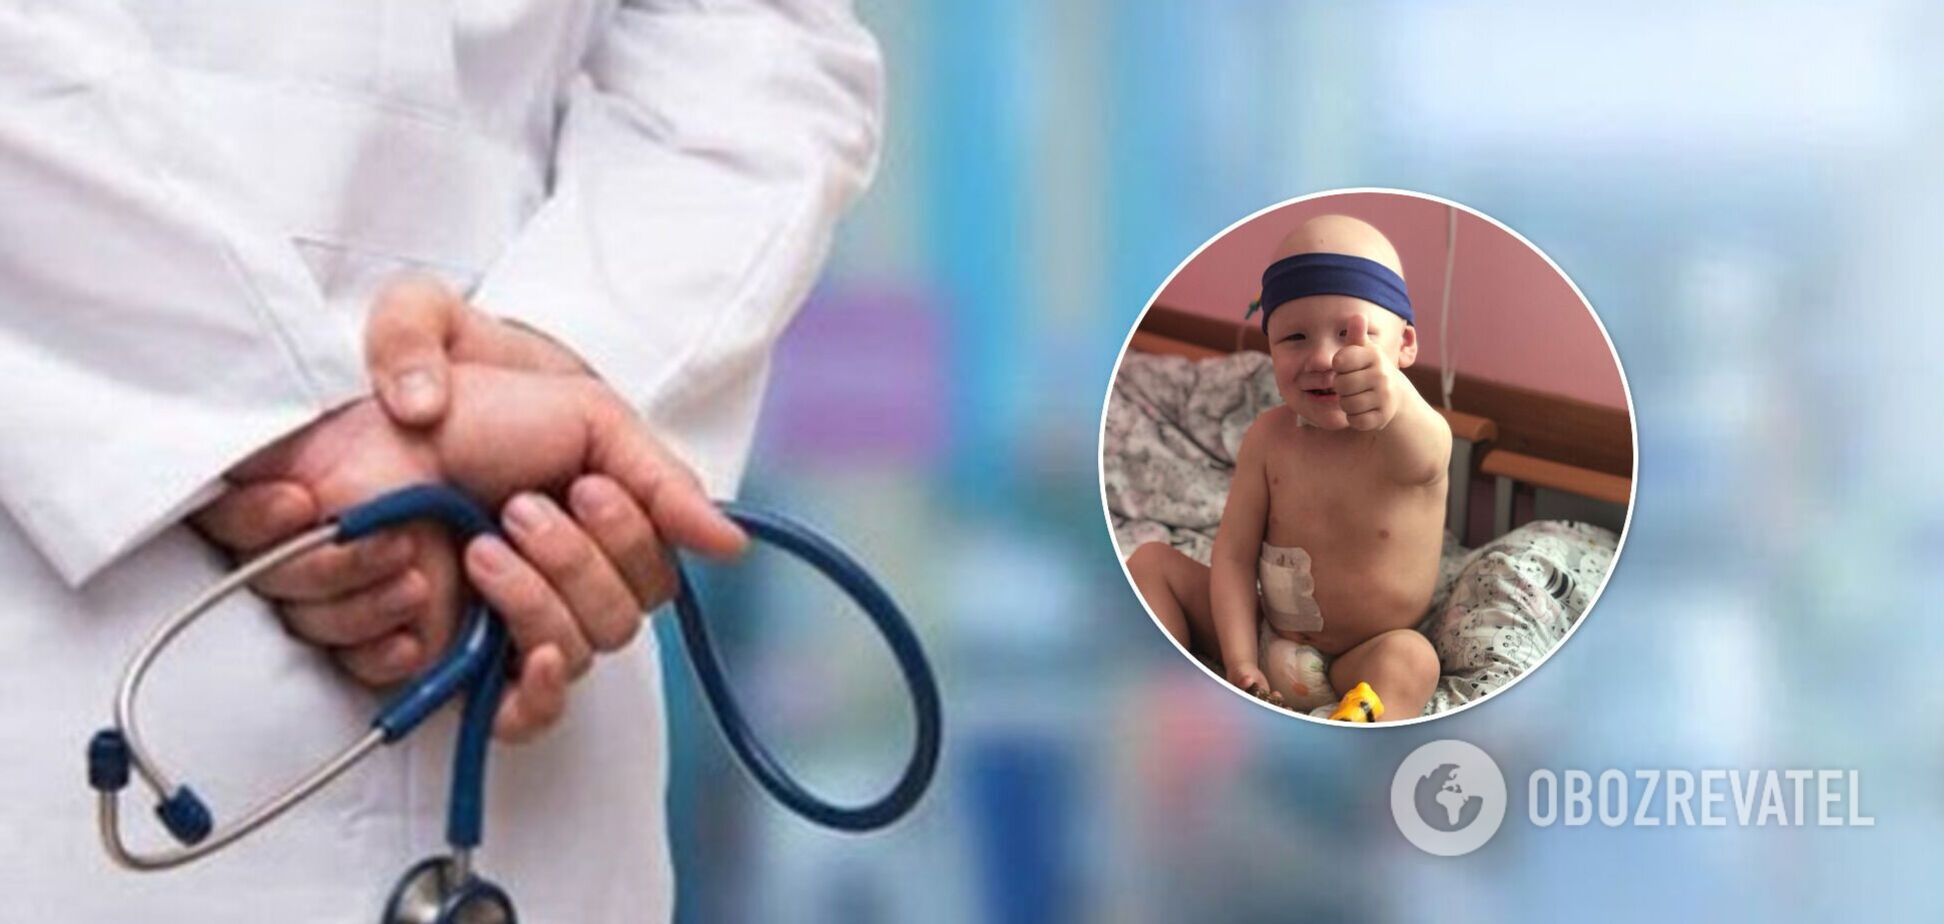 Львовские медики провели сложнейшую операцию 2-летнему ребенку из Краматорска: удалили почку с опухолью